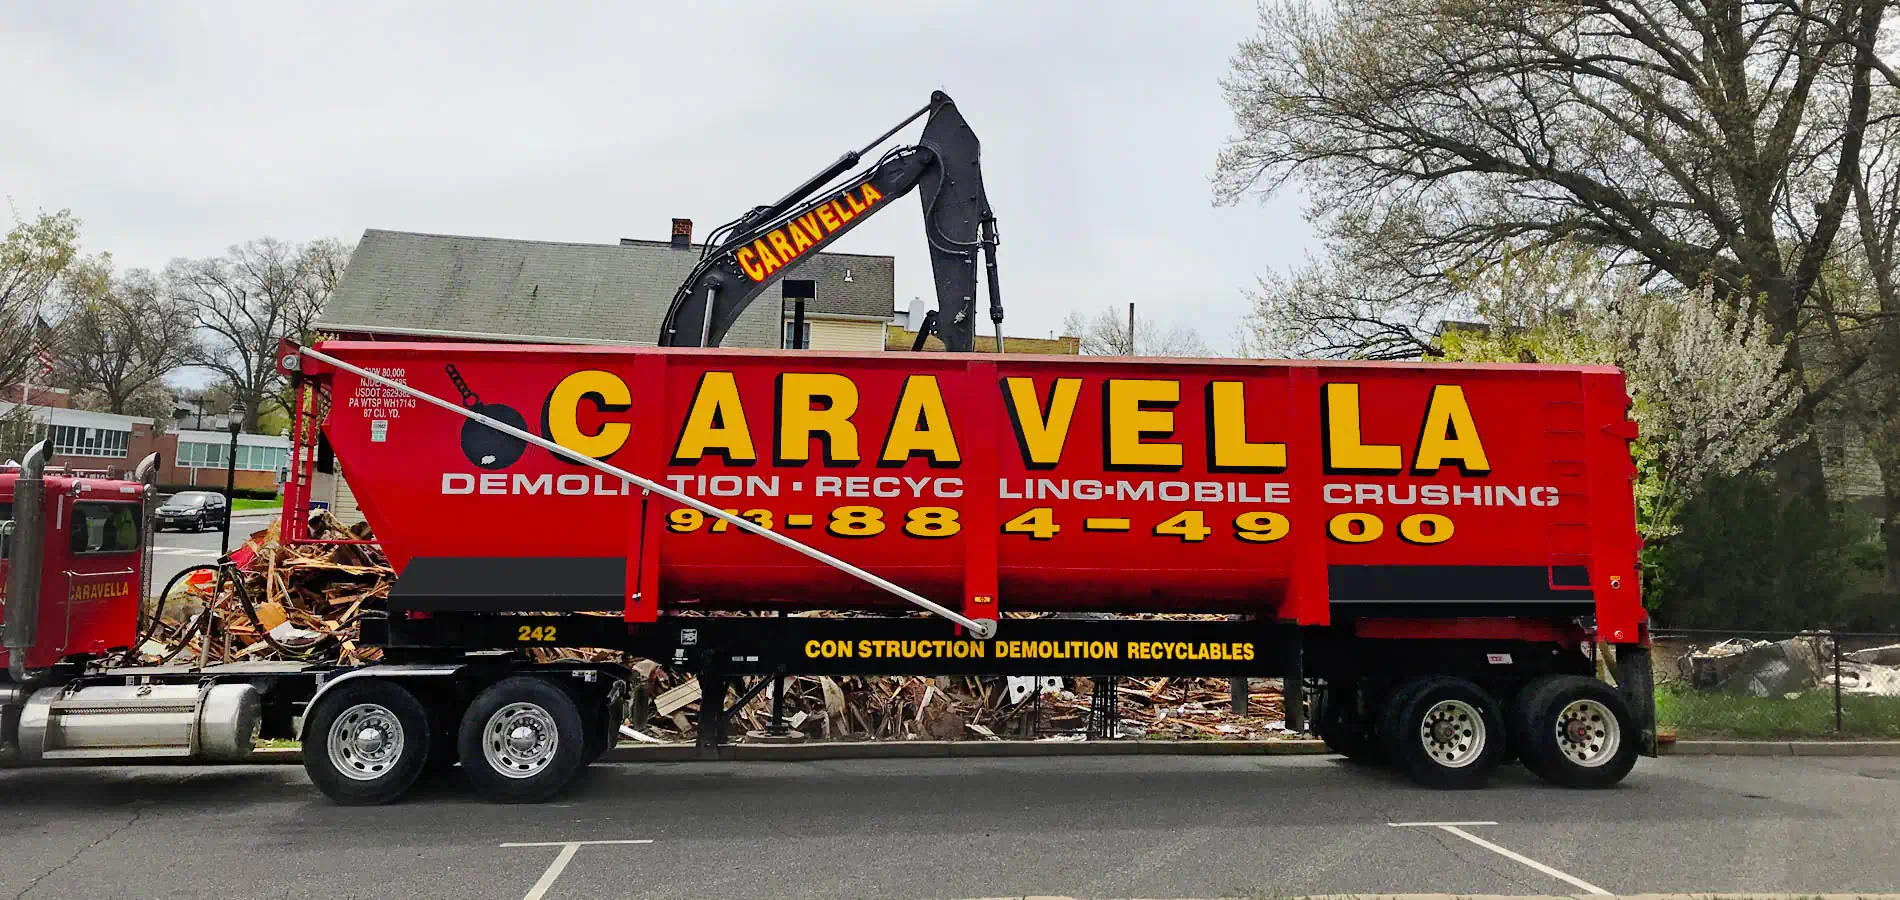 Demolition Services in Atlantic City, NJ 08401 | Caravella Demolition